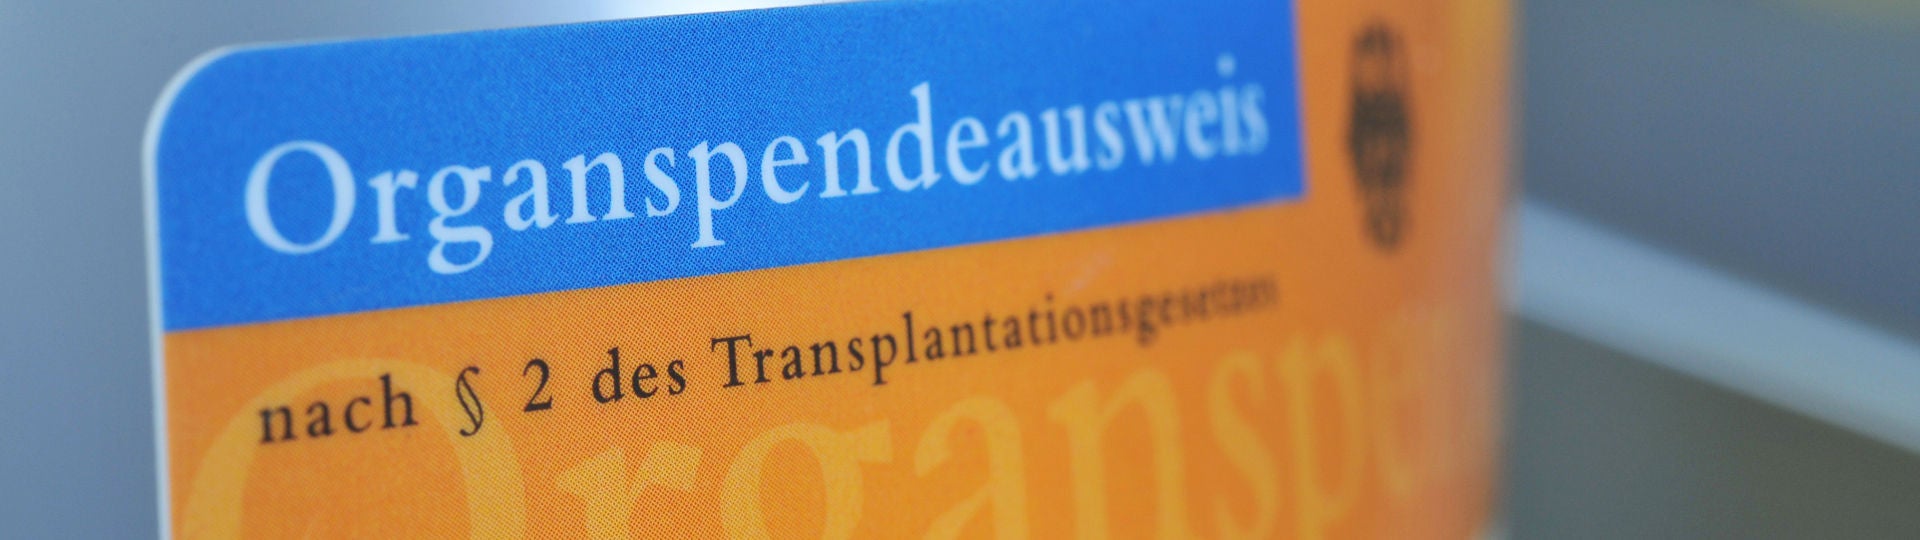 Ausschnitt eines Deutschen Organspendeausweis als Plastikkarte vor verschwommenem Hintergrund